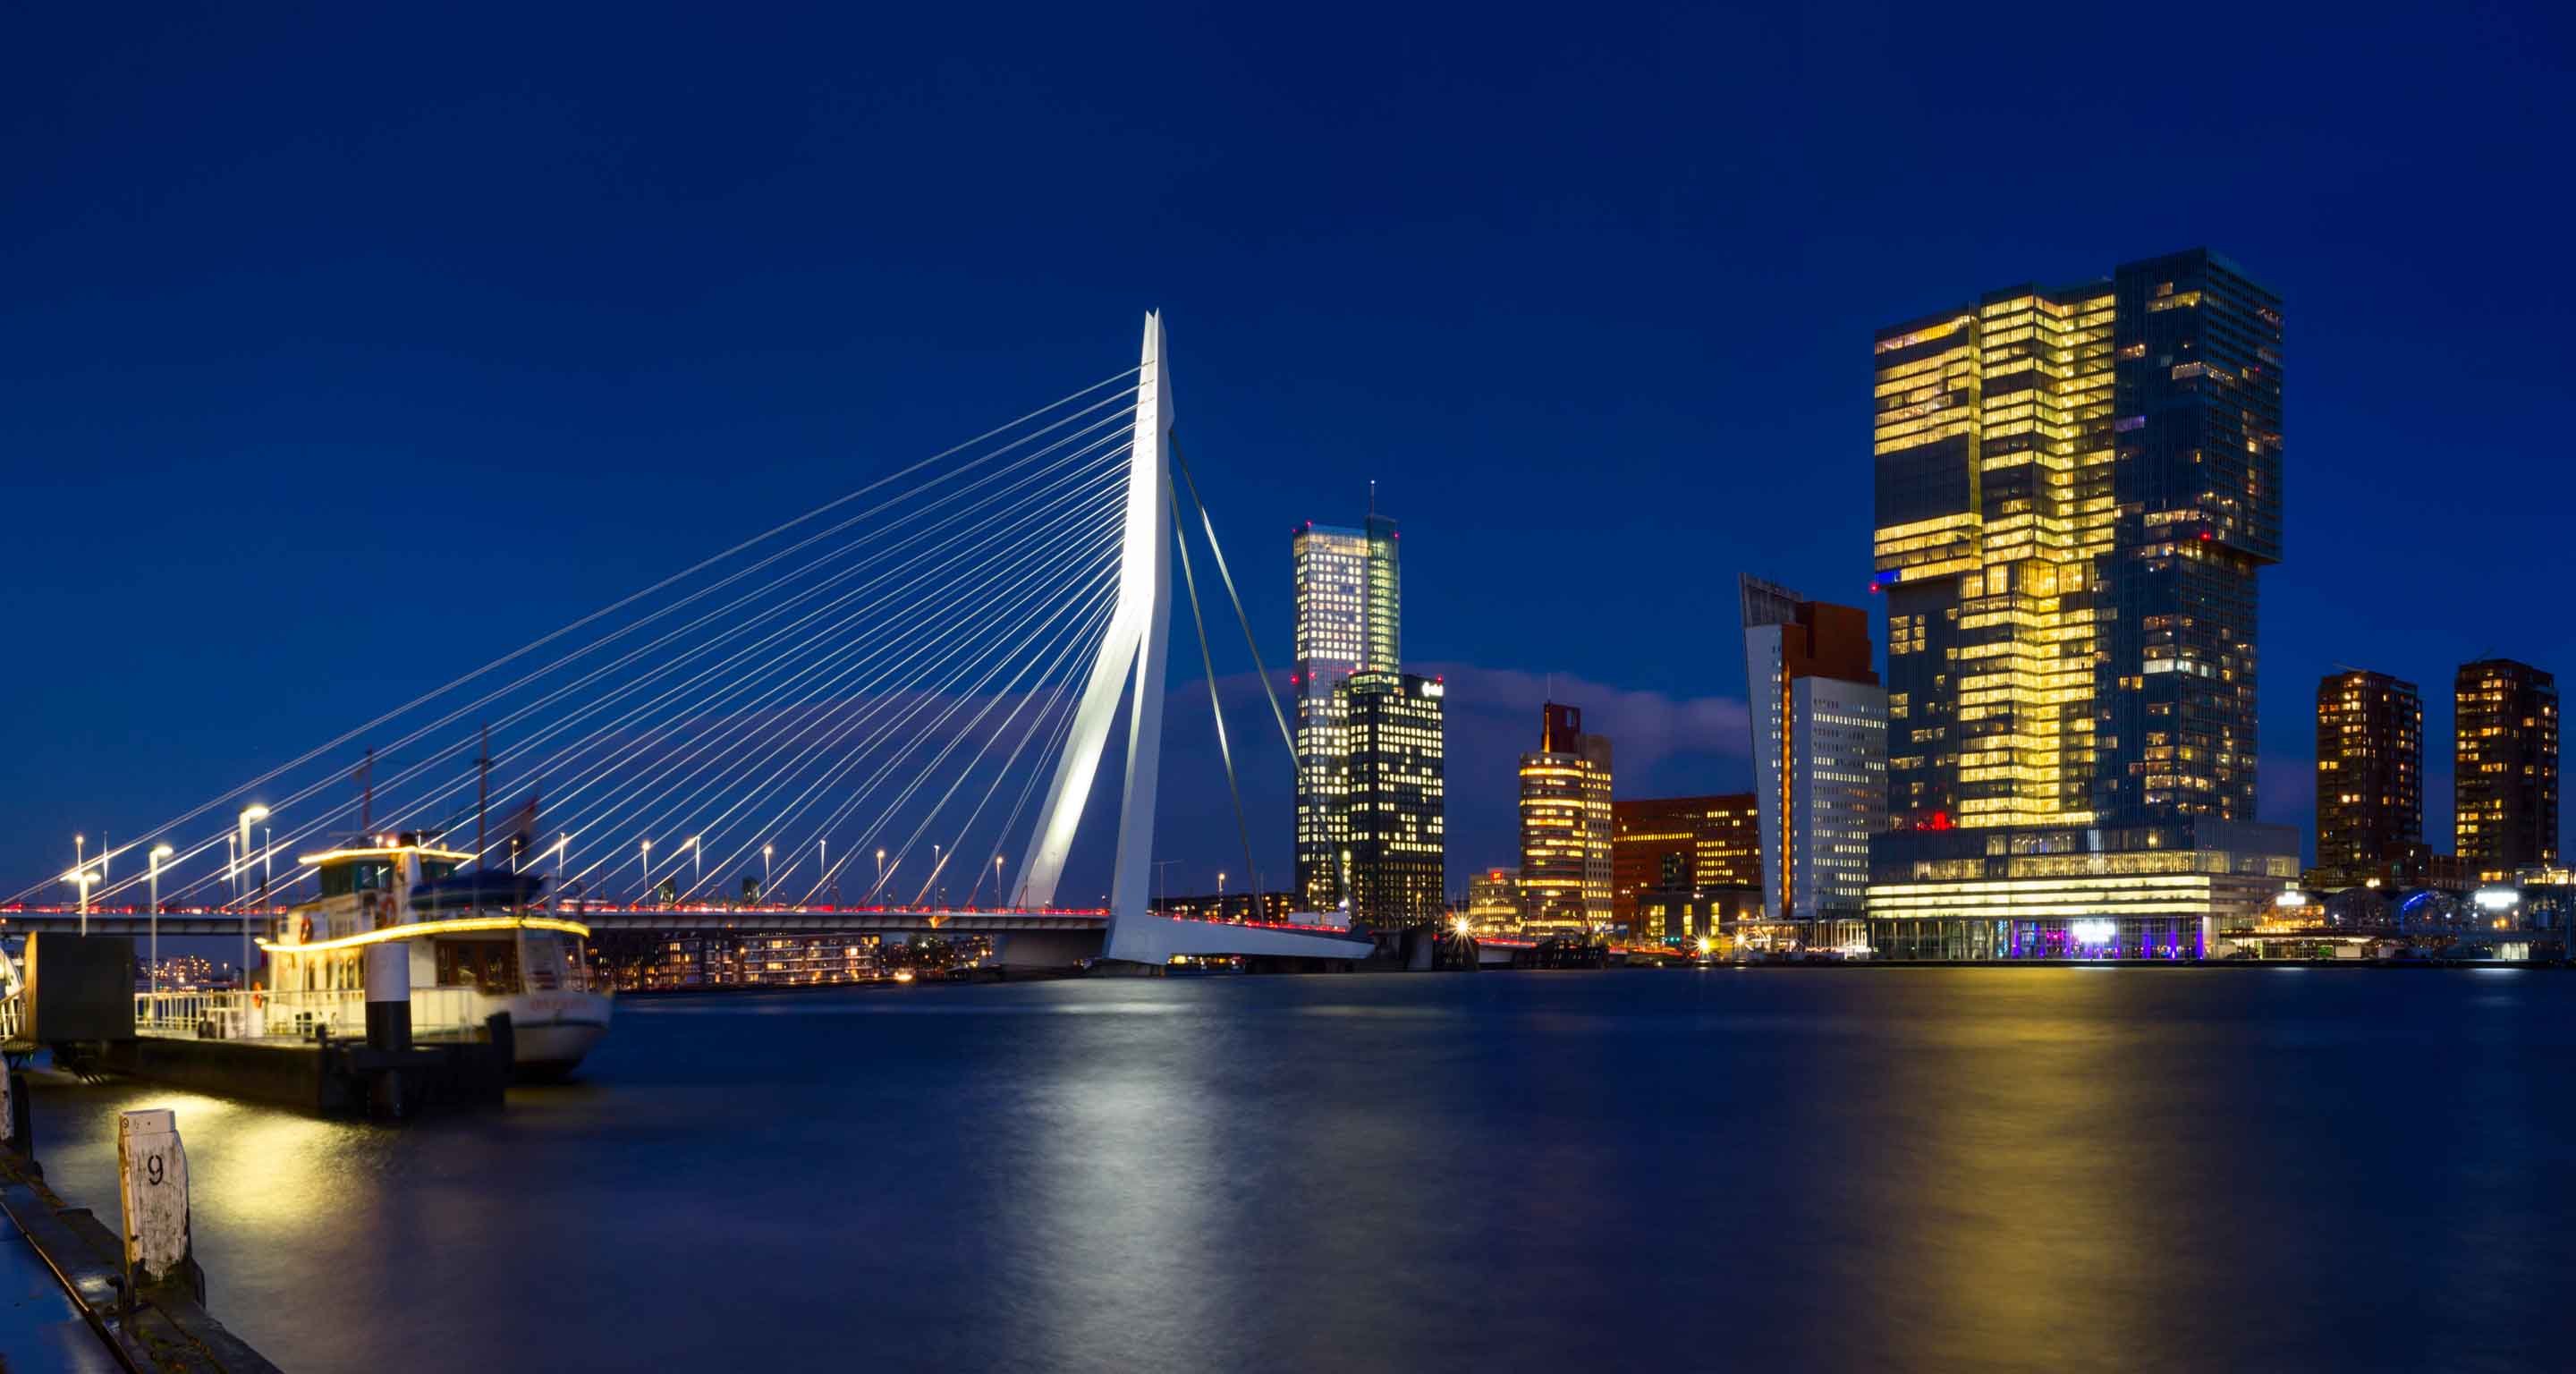 Erasmus Bridge and De Rotterdam at night.